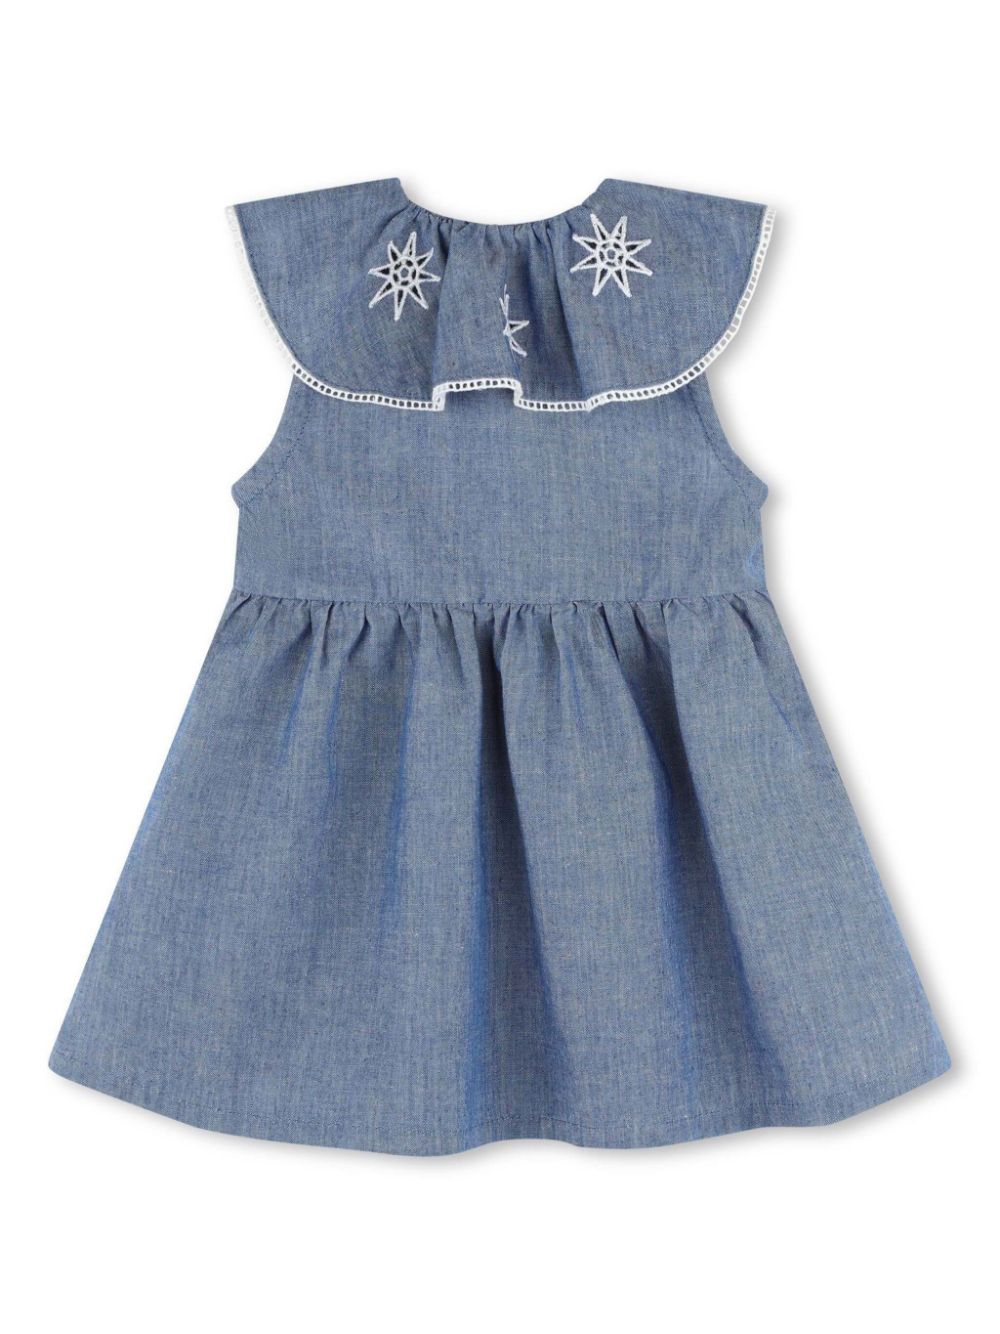 Blue dress for baby girl